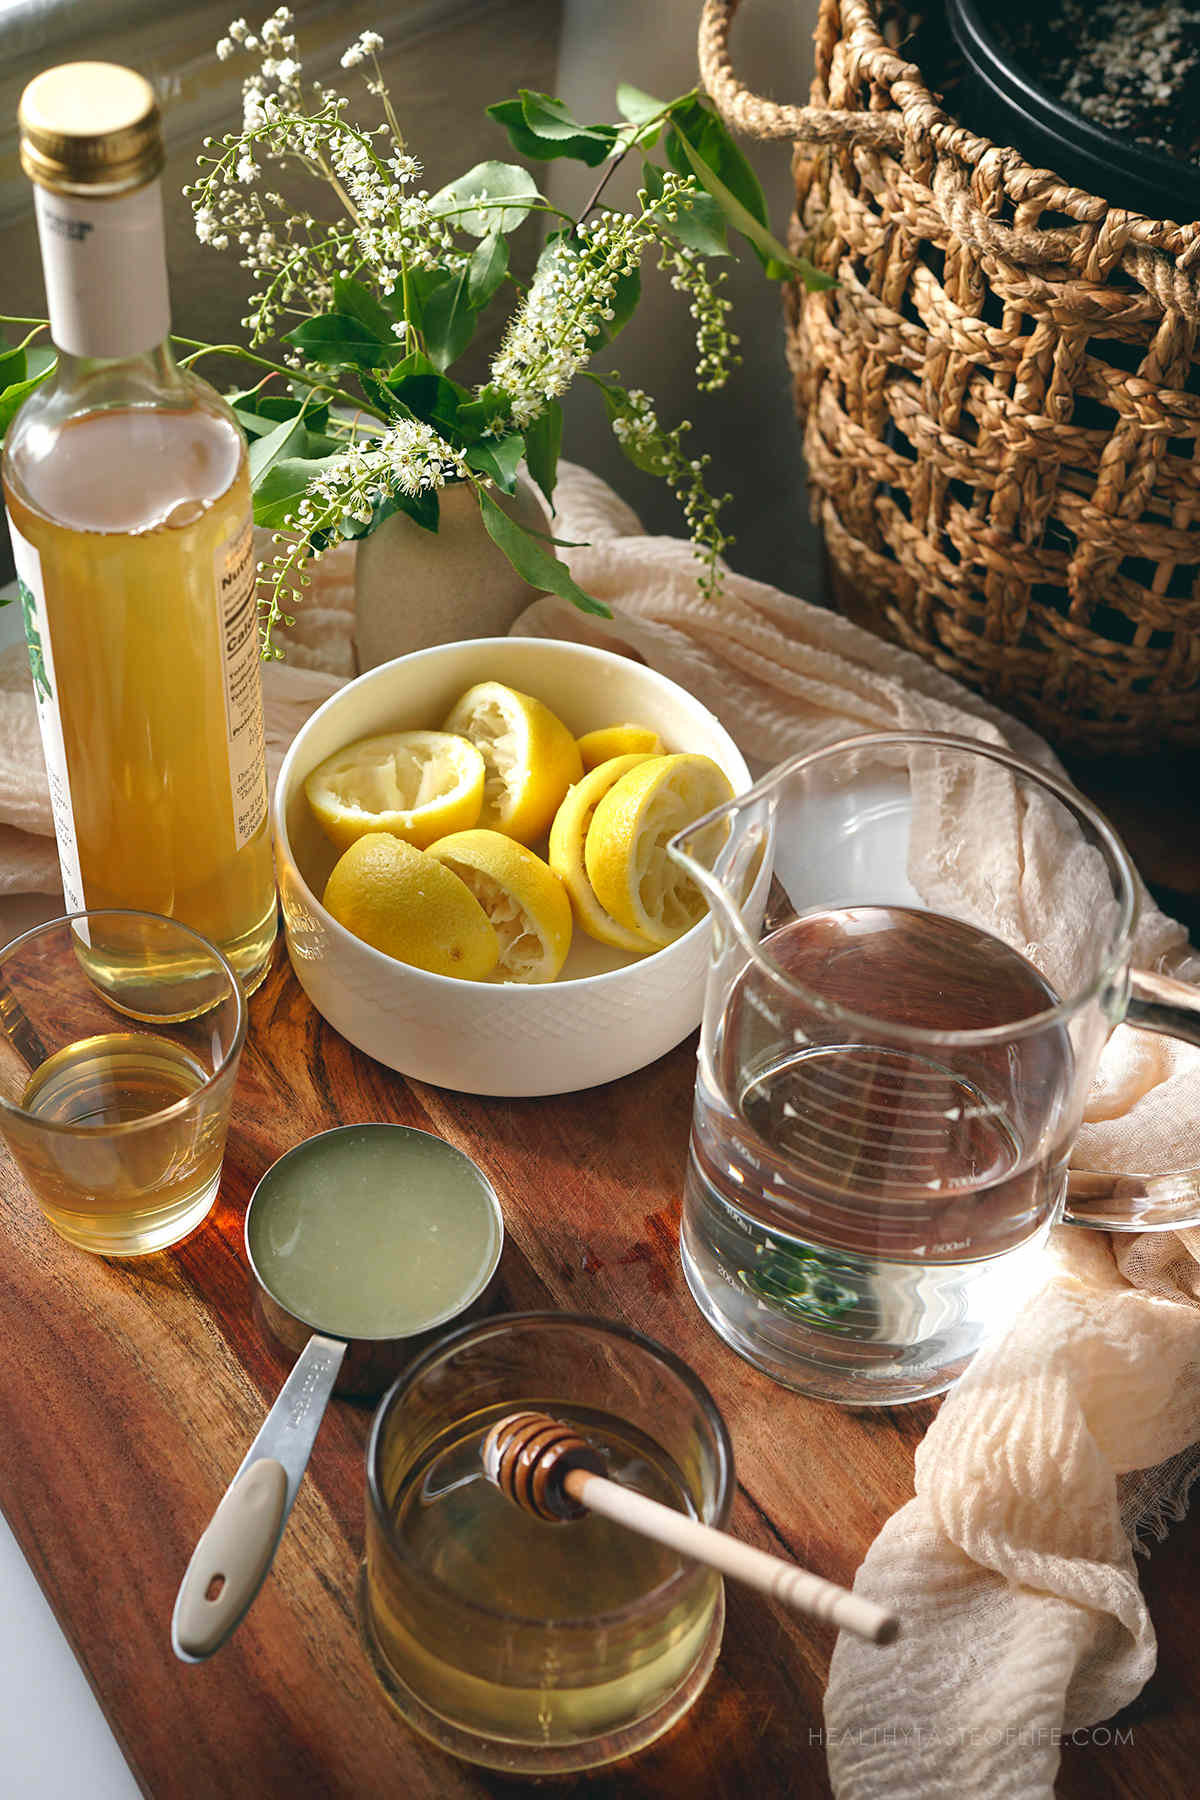 Photo showing the measured ingredients needed for making an elderflower lemonade.